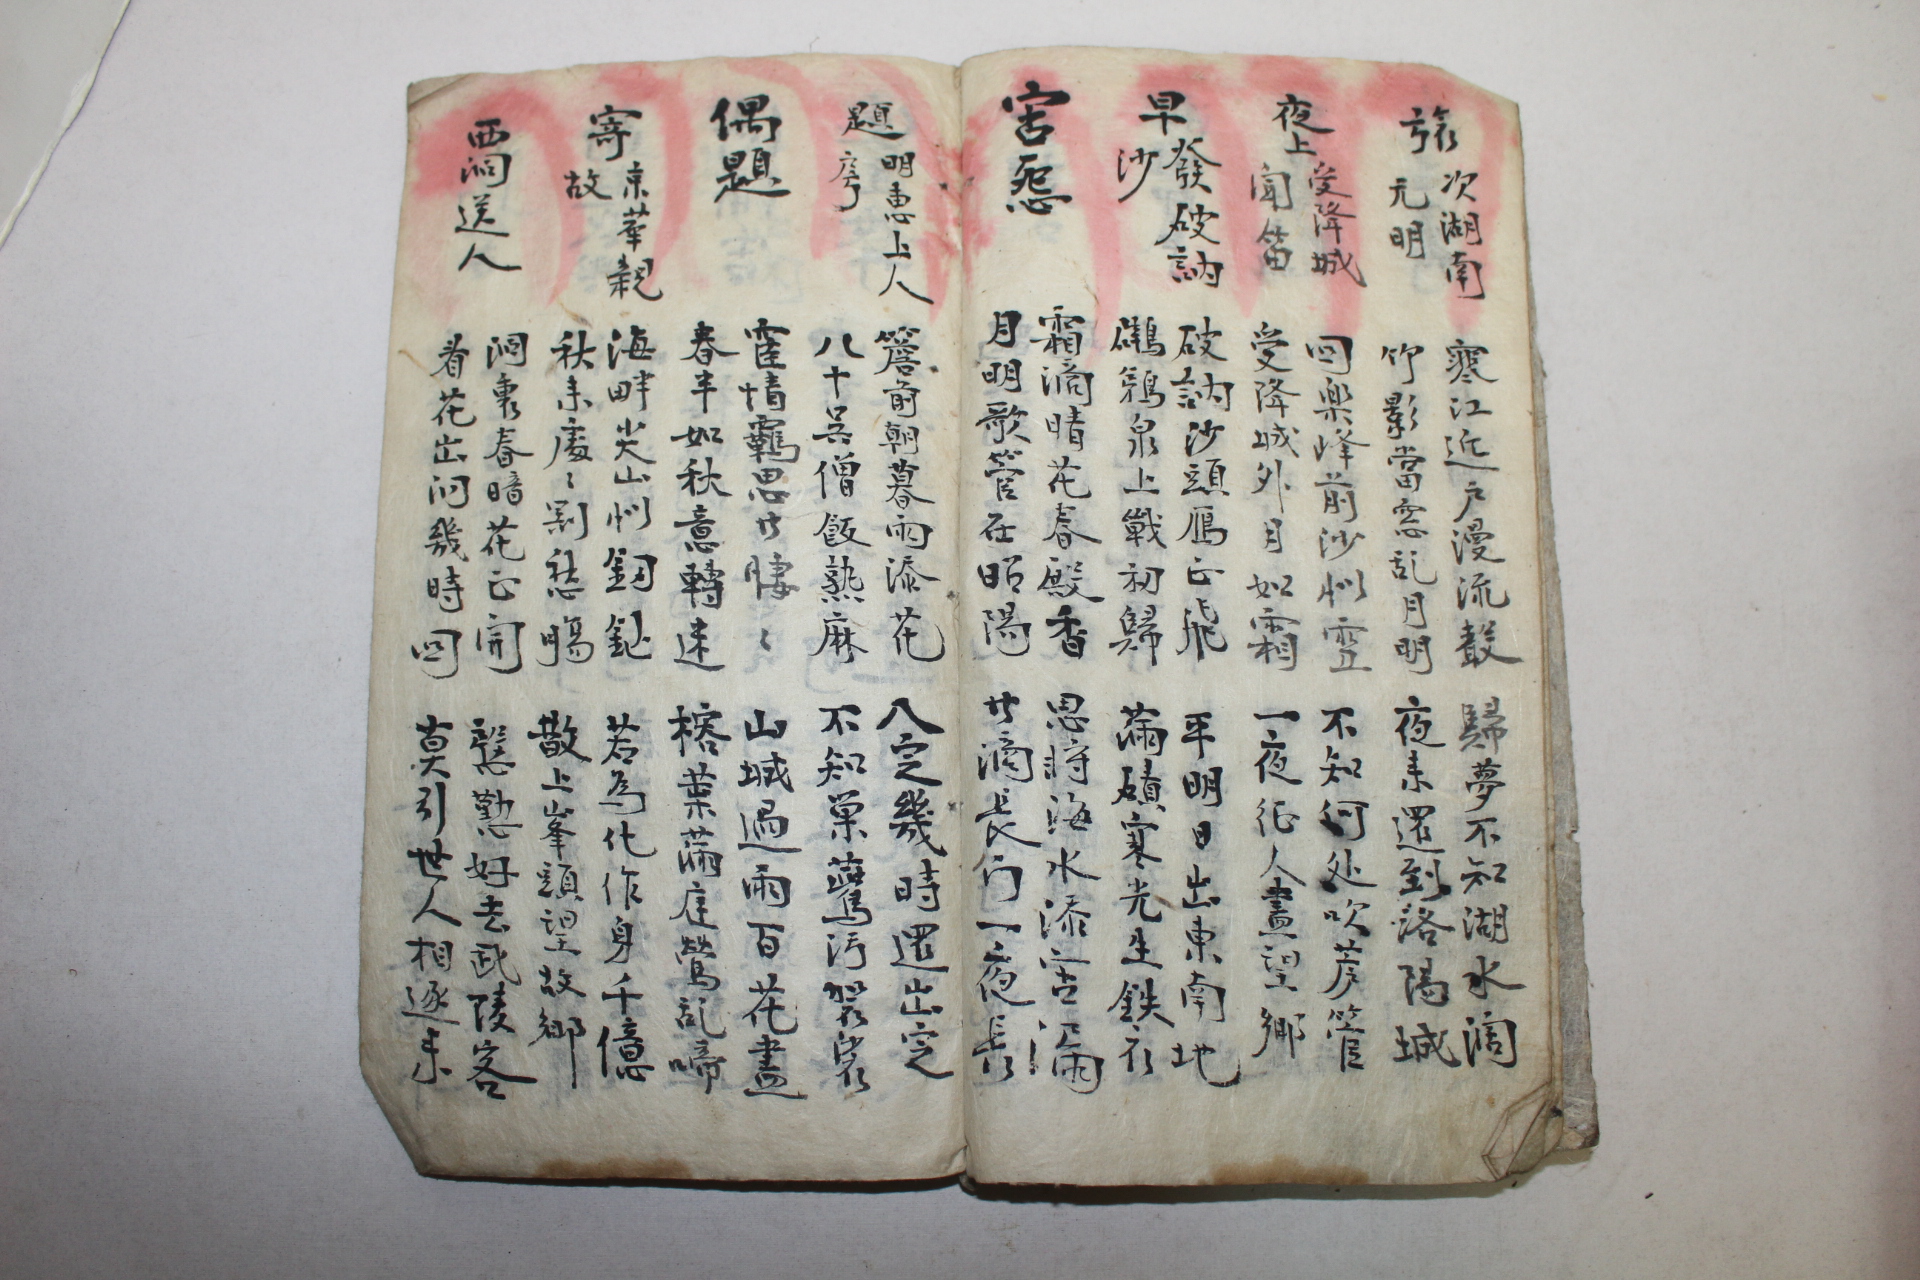 조선시대 필사본 칠언당음(七言唐音)